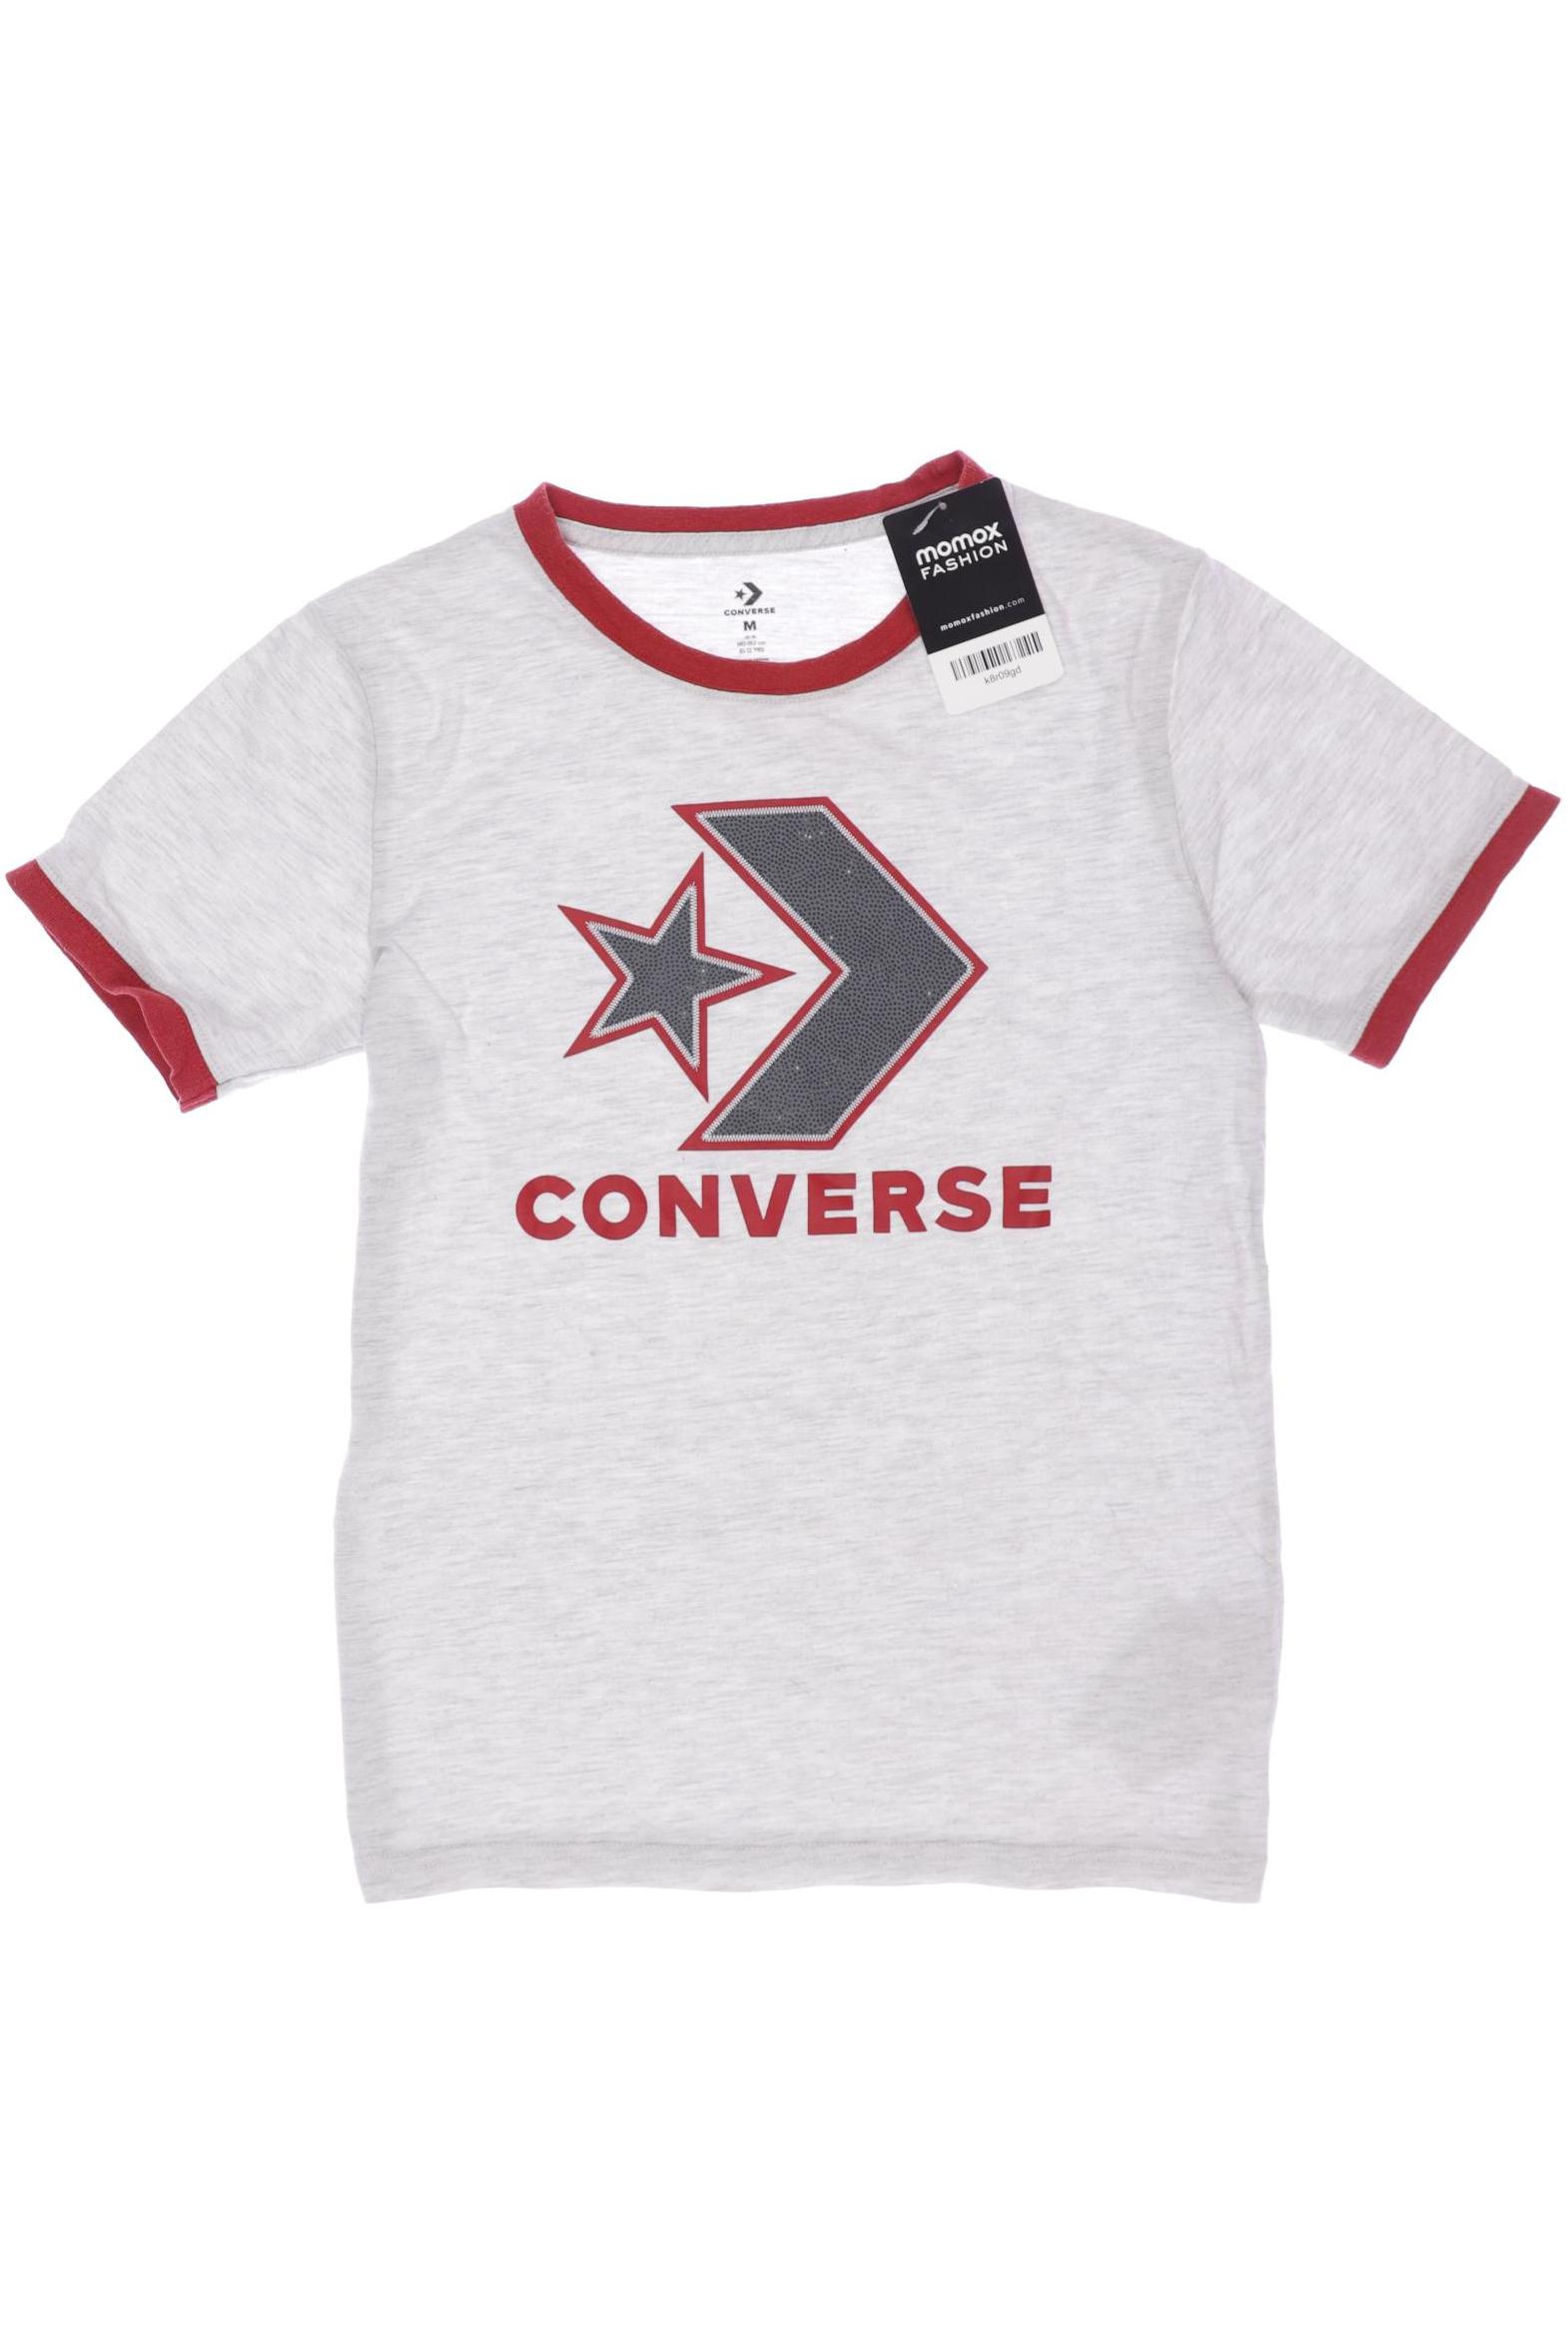 Converse Herren T-Shirt, grau, Gr. 146 von Converse